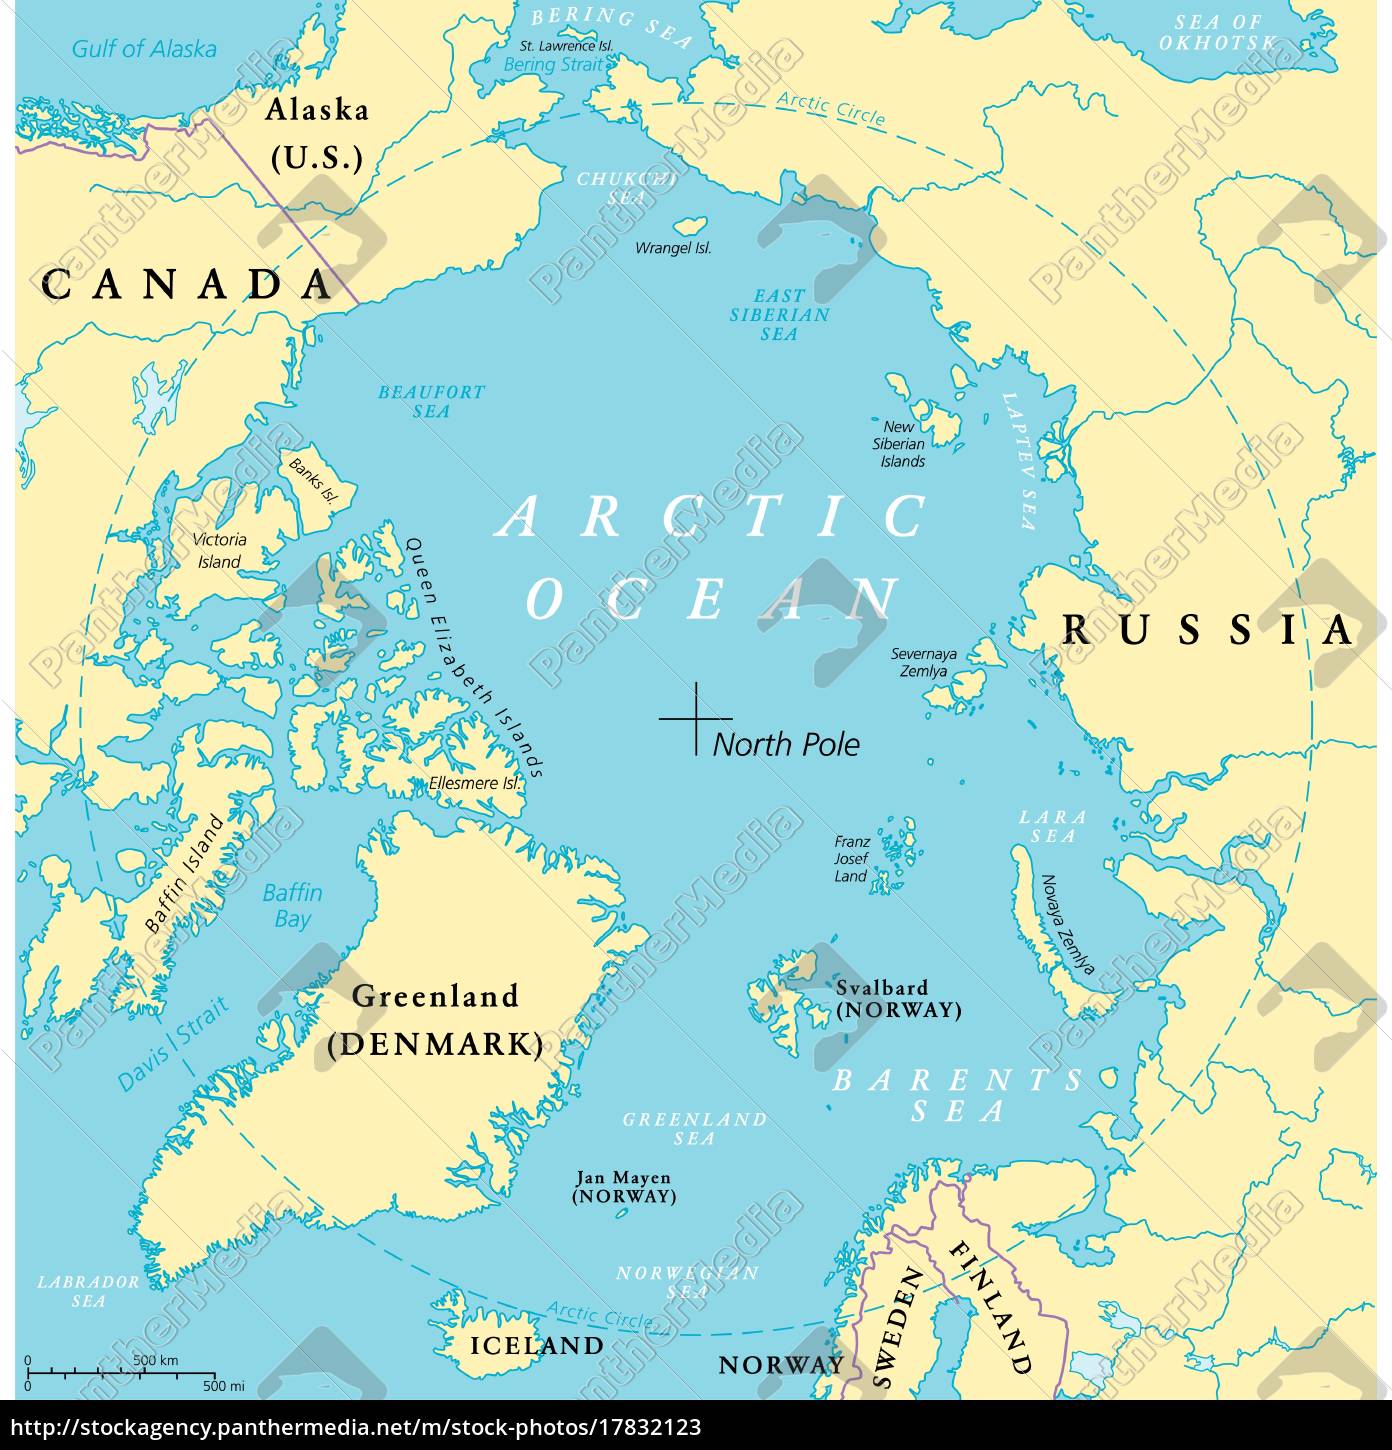 Arctic Ocean Map - Royalty free image - #17832123